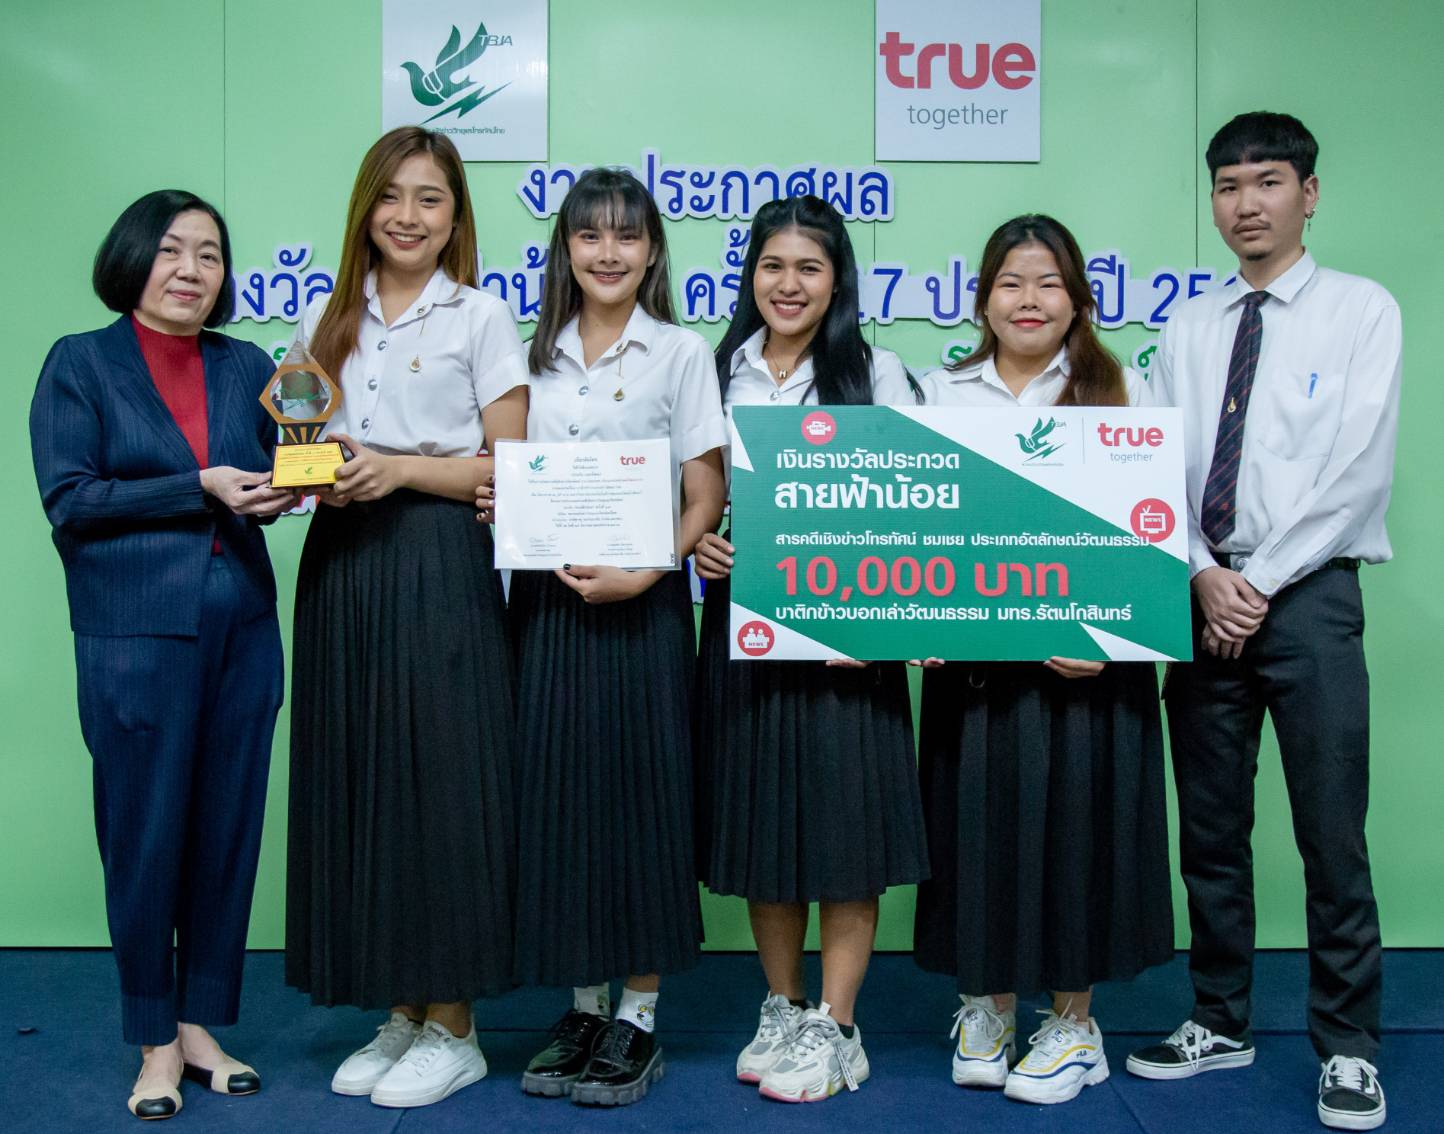 กลุ่มทรู ร่วมกับ สมาคมนักข่าววิทยุและโทรทัศน์ไทย มอบรางวัลสายฟ้าน้อย ครั้งที่ 17 ประจำปี 2565  